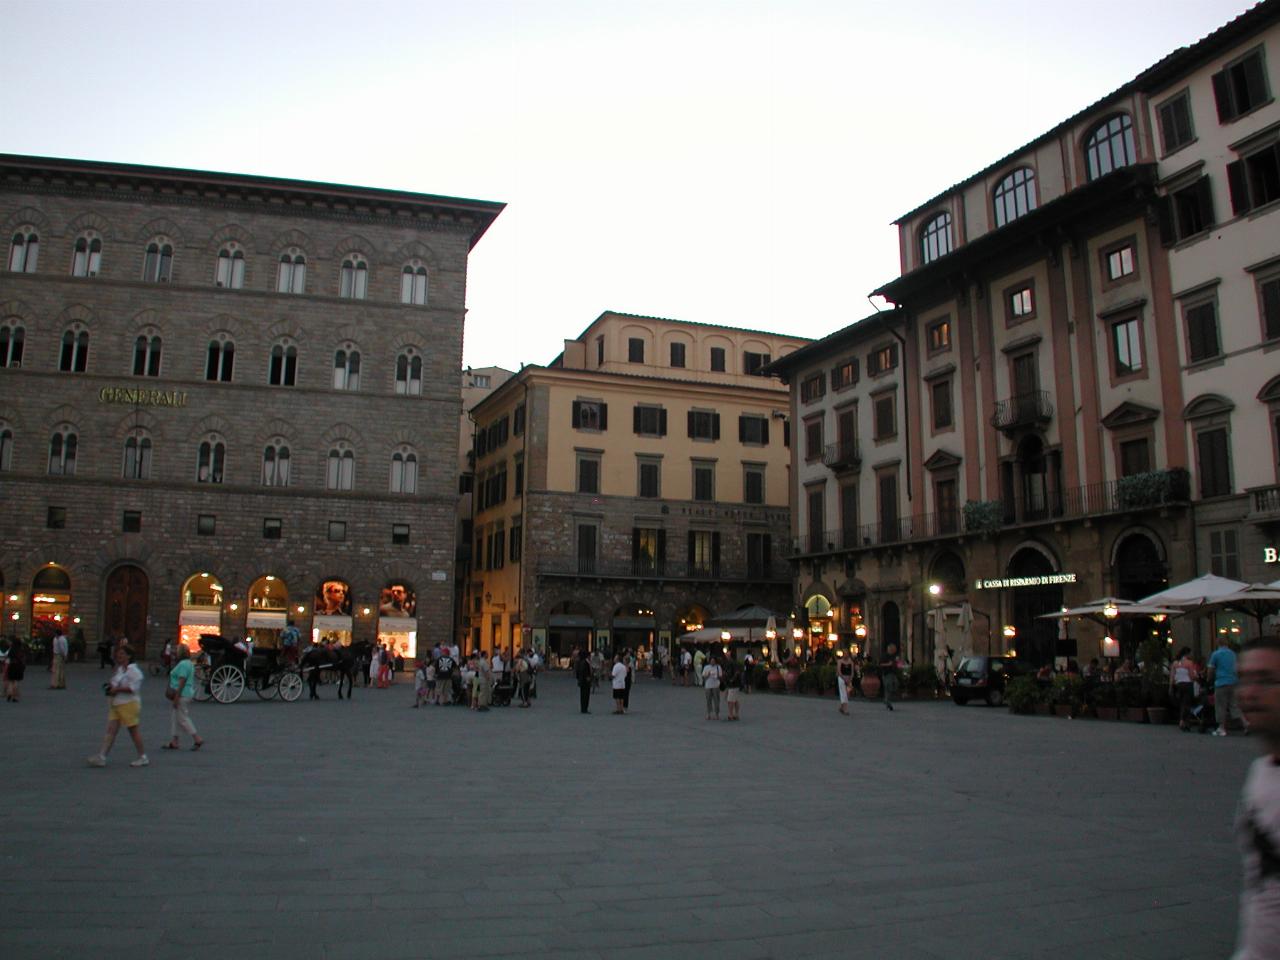 Part of Piazza della Signoria, as seen from Palazzo Vecchio